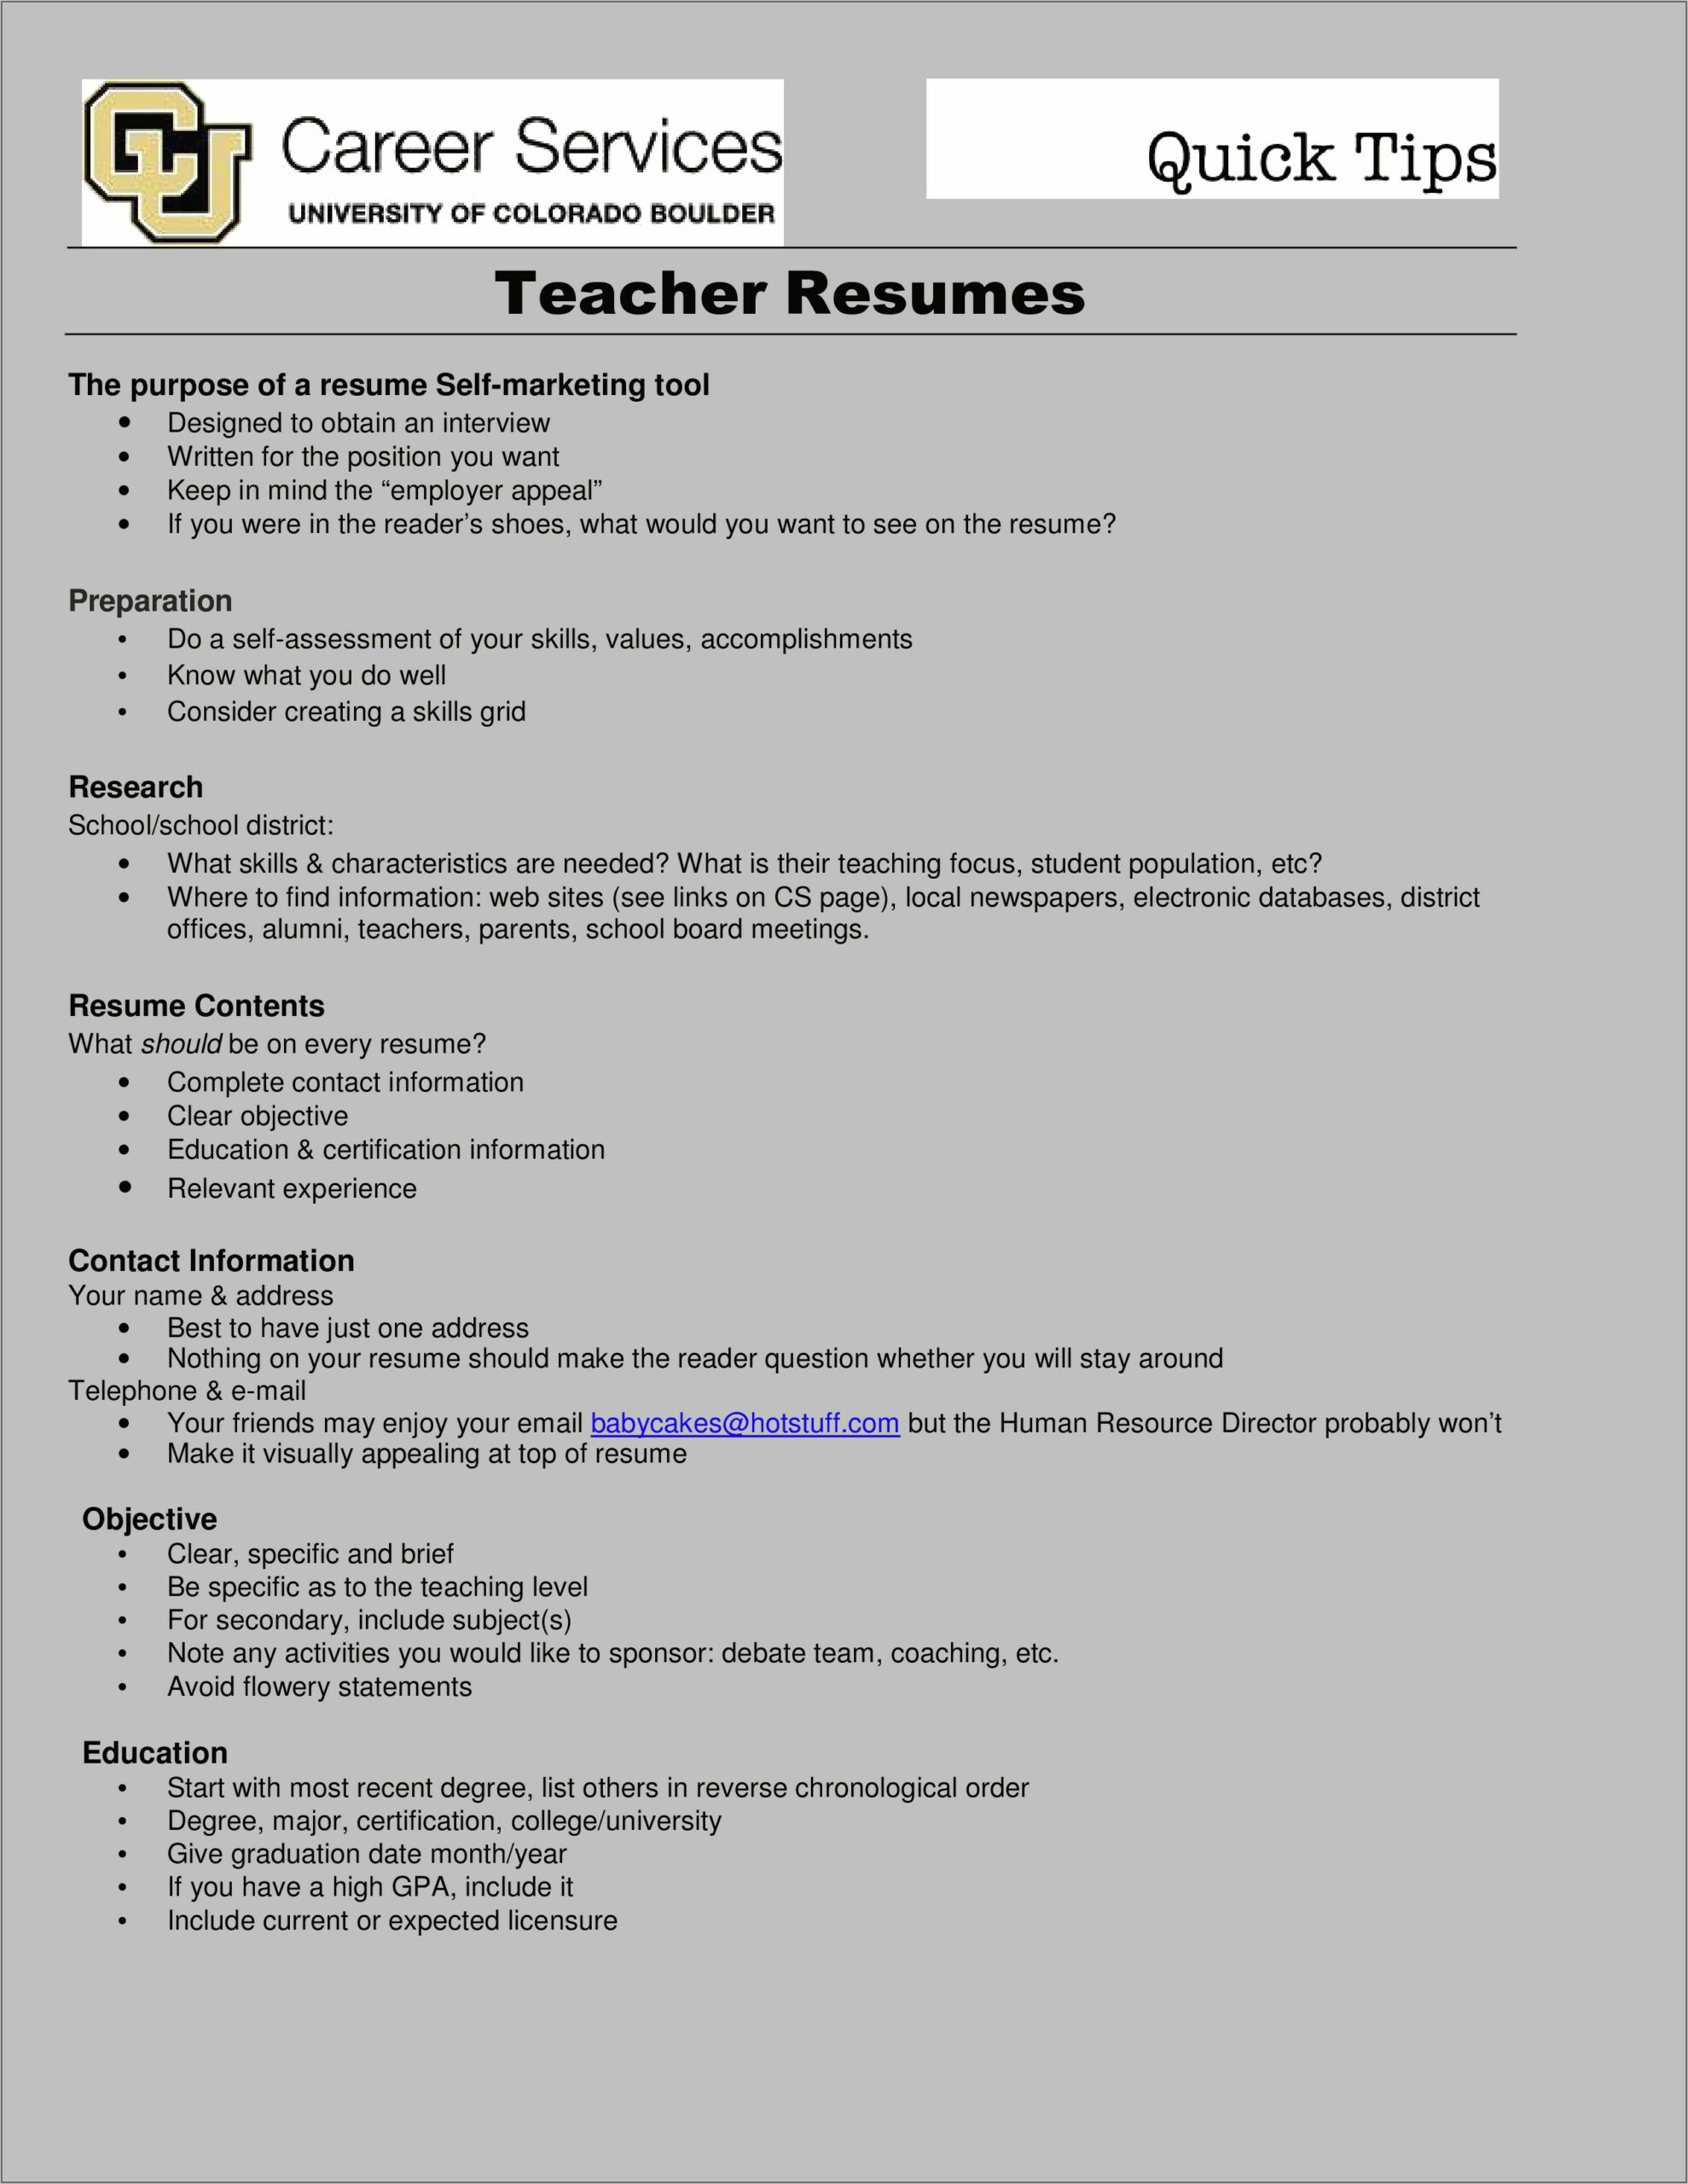 Create Resume For Teacher Job Online